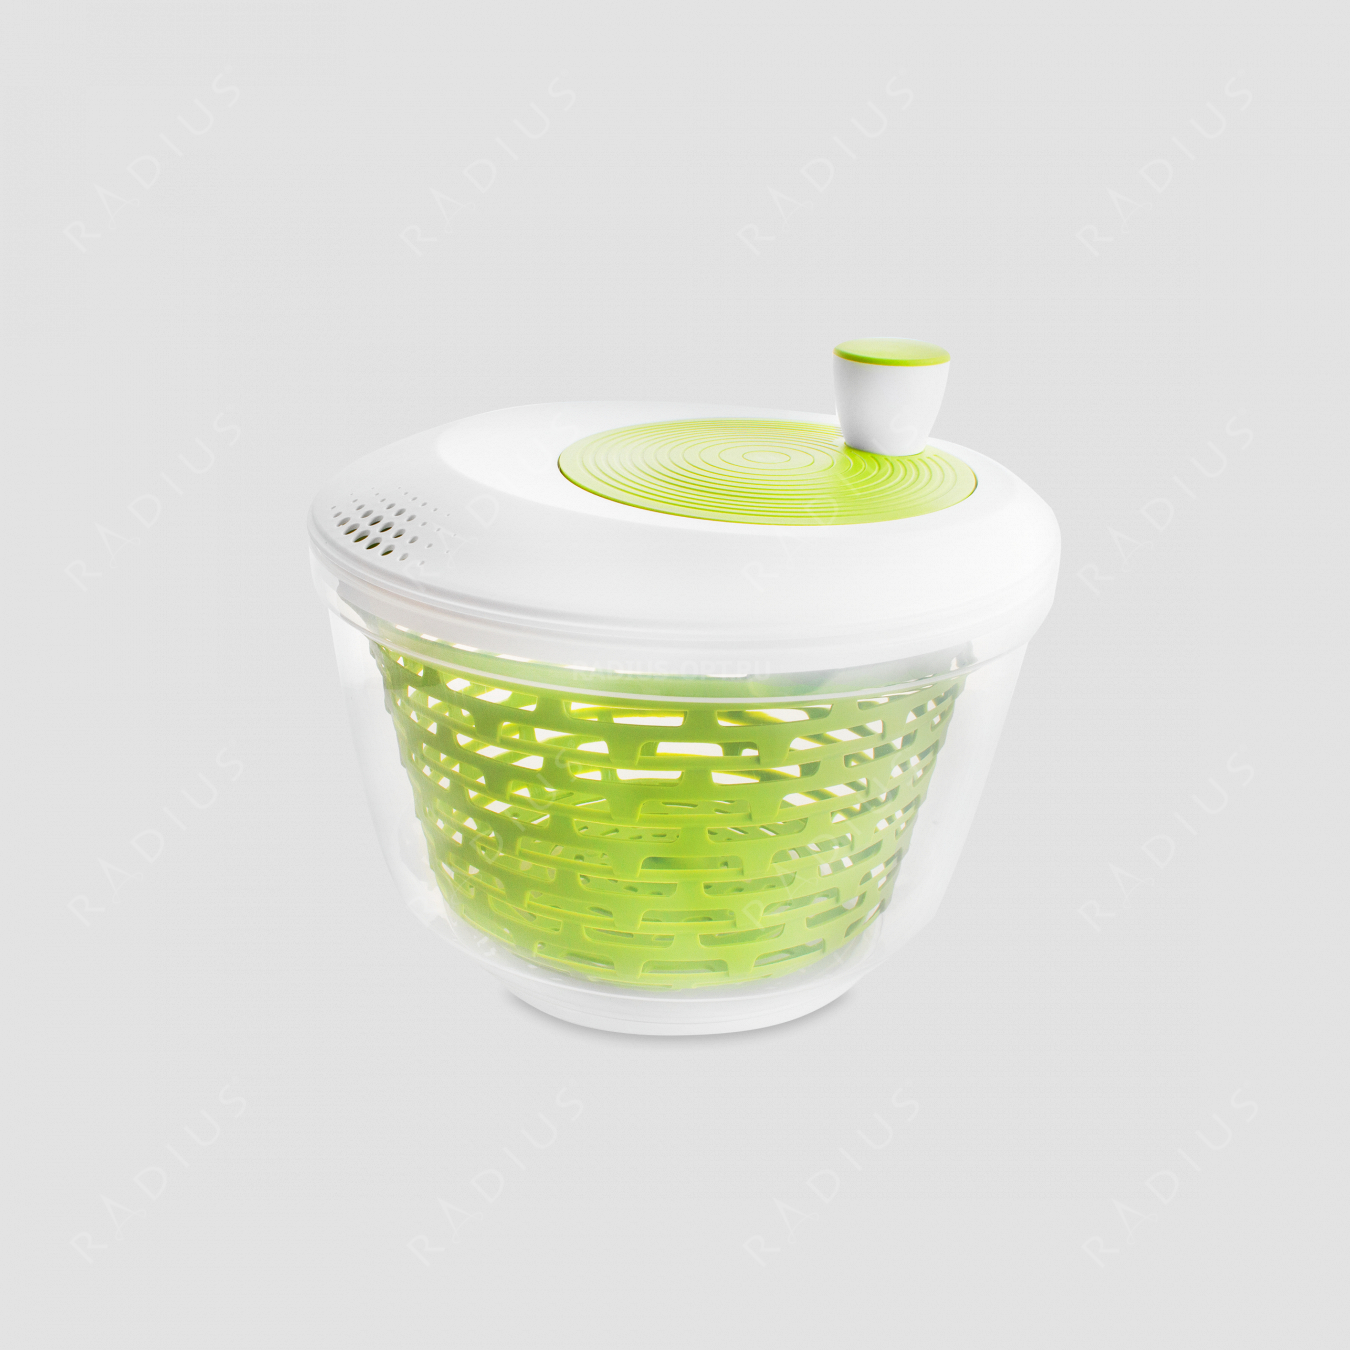 Сушка для салатных листьев, диаметр 23,5 см. пластик, цвет зеленый, 4,4 литра, серия Plastic tools, Westmark, Германия